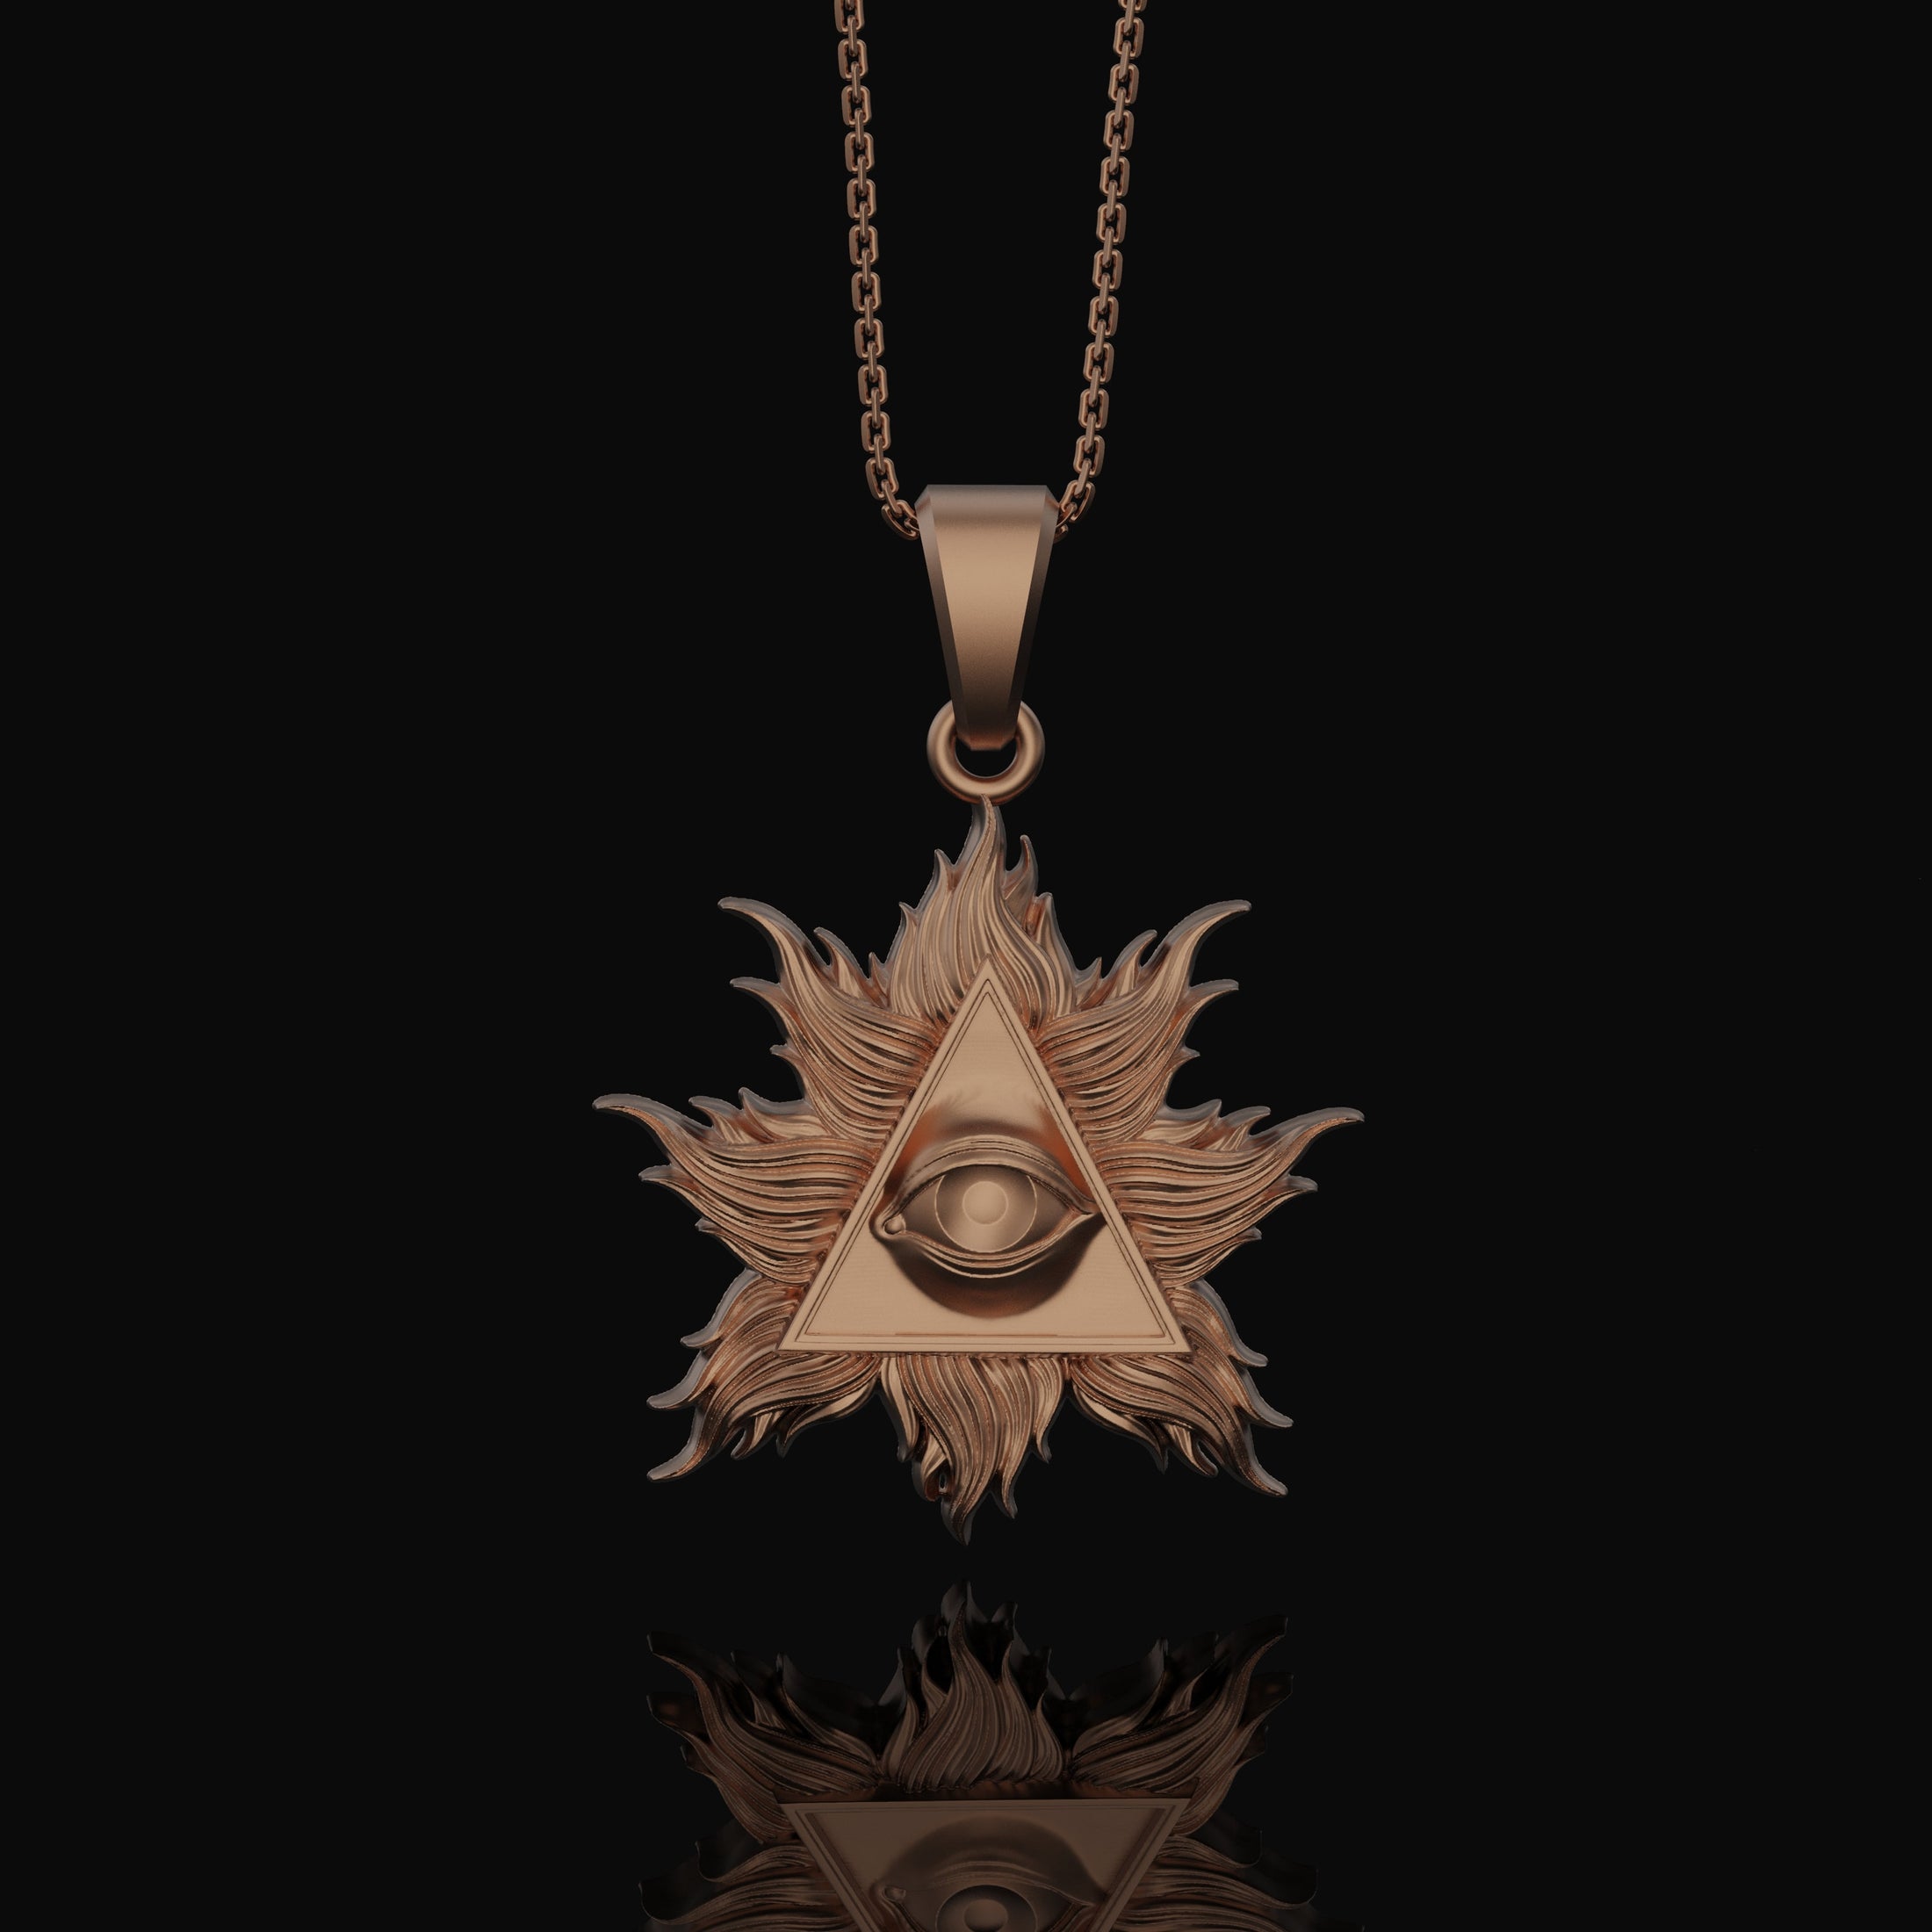 Silver Eye of Providence Charm - Two-Style Pyramid Pendant, Masonic Illuminati Jewelry, Mystical Gift